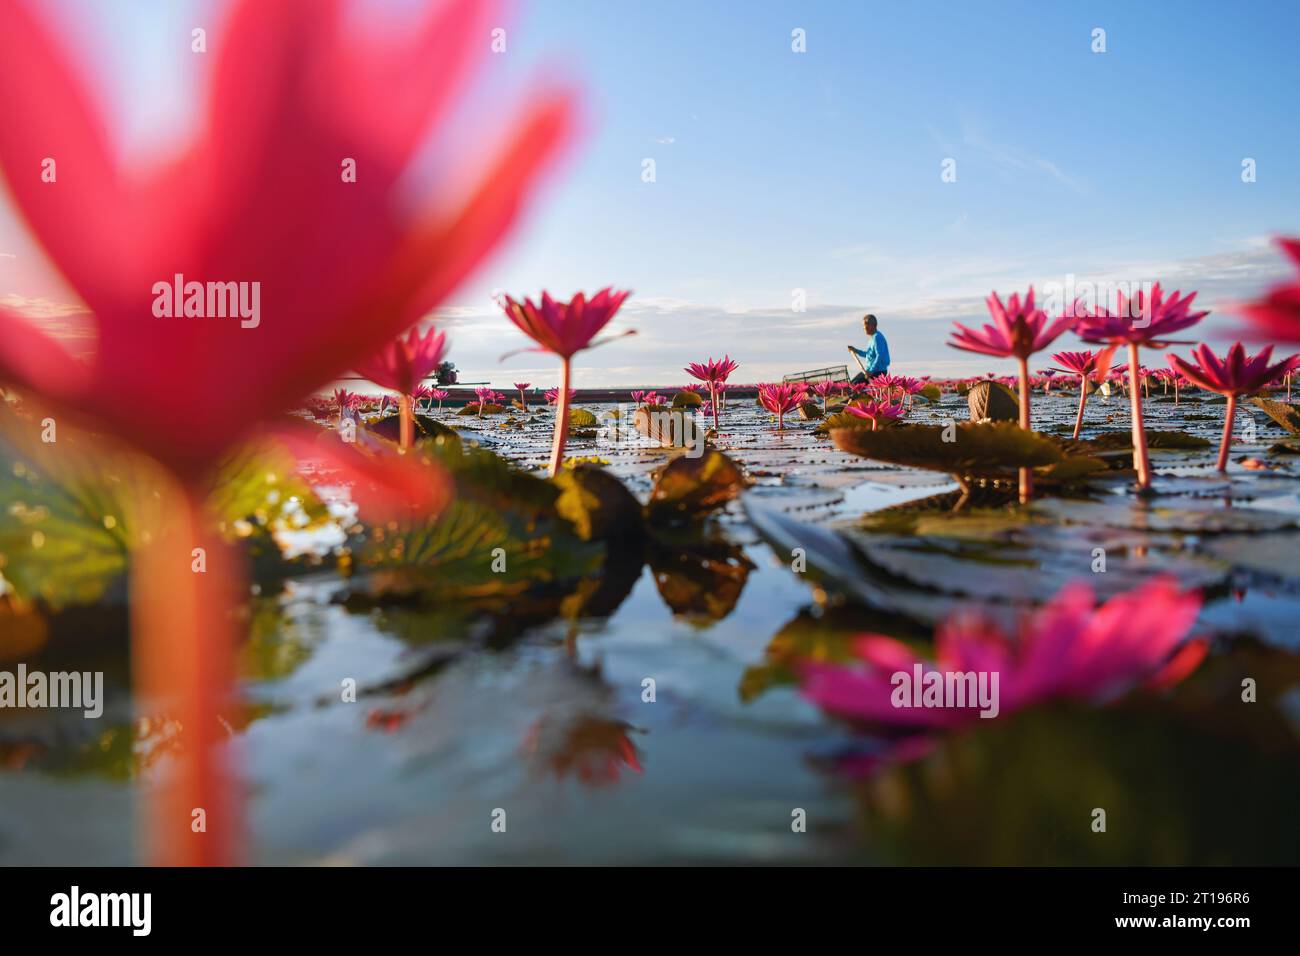 Fischer segeln in einem Boot in einem See voller rosafarbener Seerosen, Red Lotus Sea (Talay Bua Daeng), Udon Thani, Thailand Stockfoto